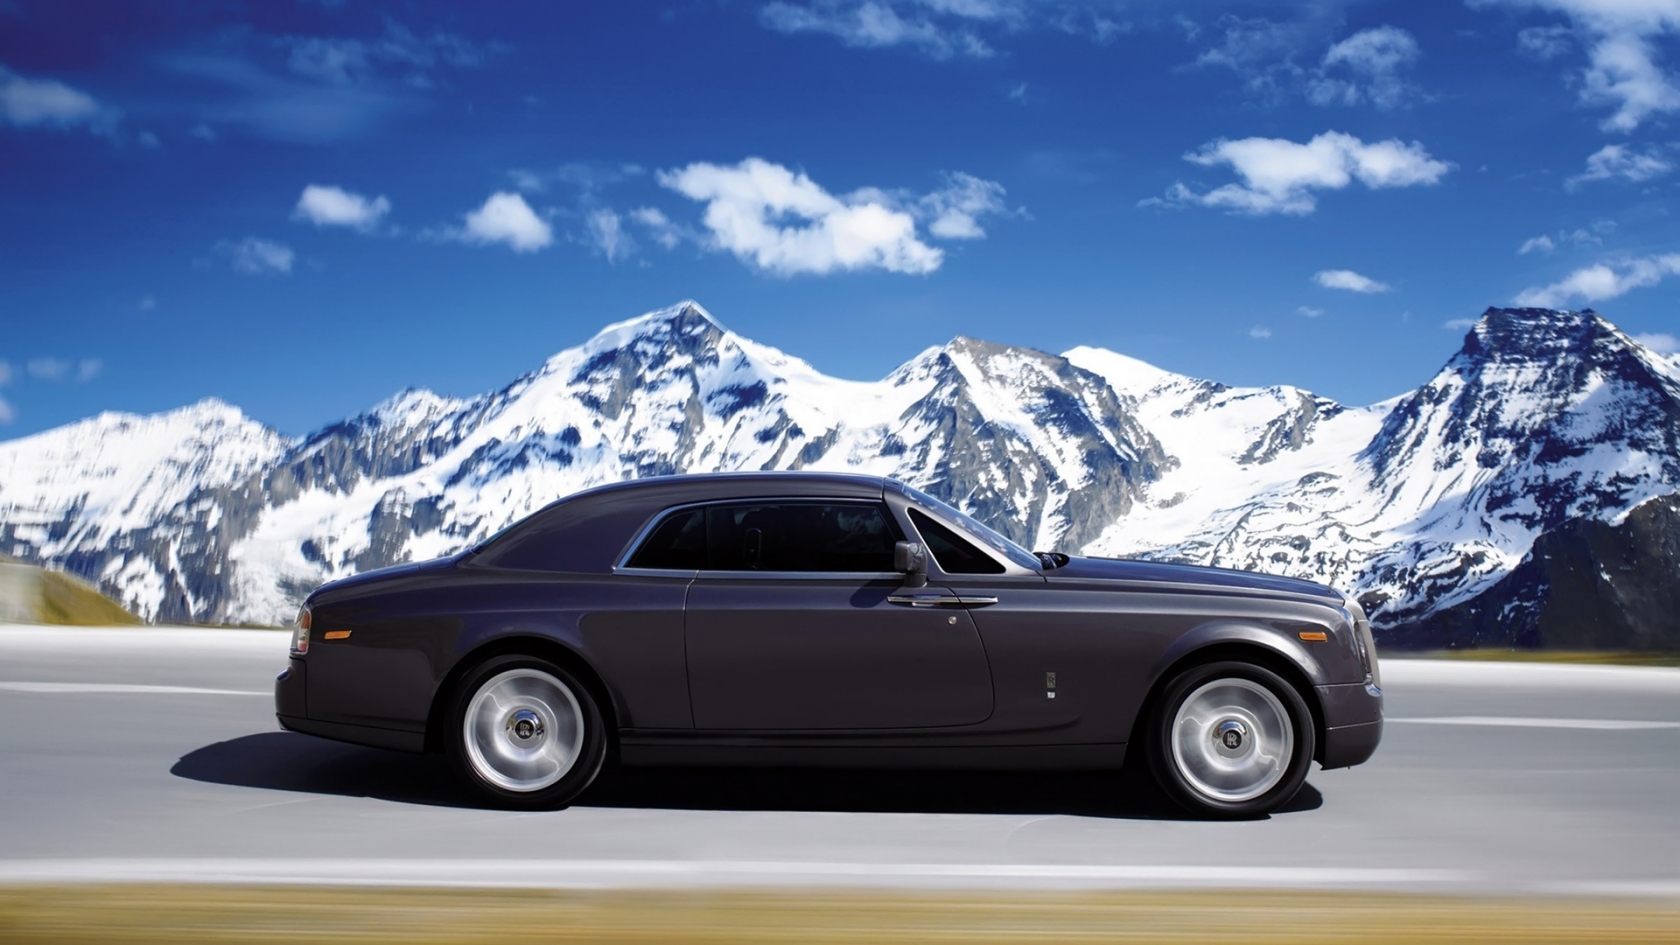 Rolls Royce Phantom Coupe 2010 for 1680 x 945 HDTV resolution